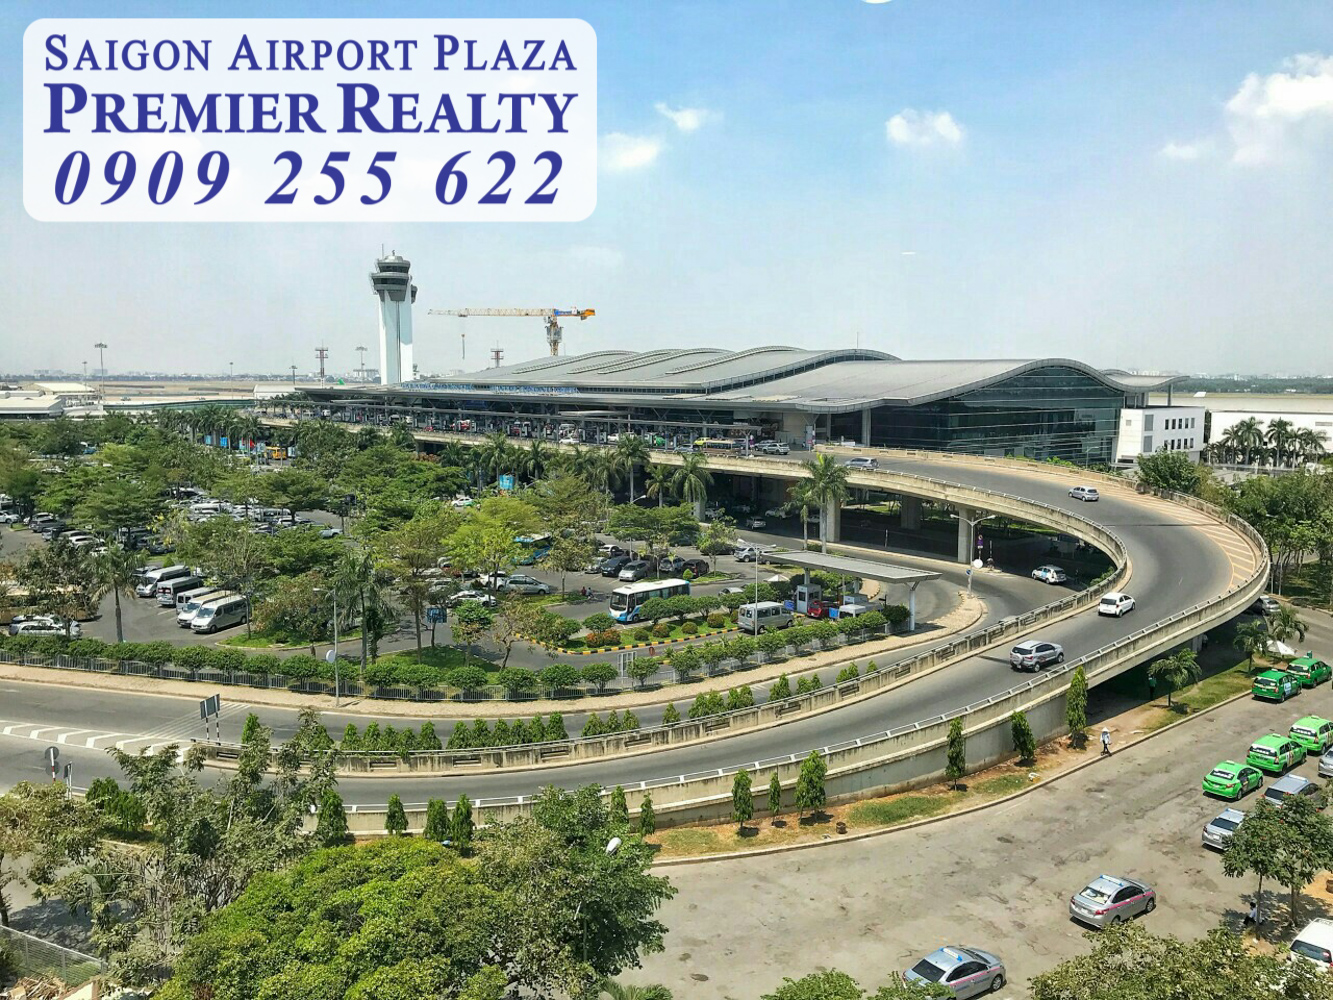 Hotline Pkd 0909 255 622 - Saigon Airport Plaza, Cho Thuê Gấp Căn hộ 3pn - 110m2, Tầng Trung, View sân vườn